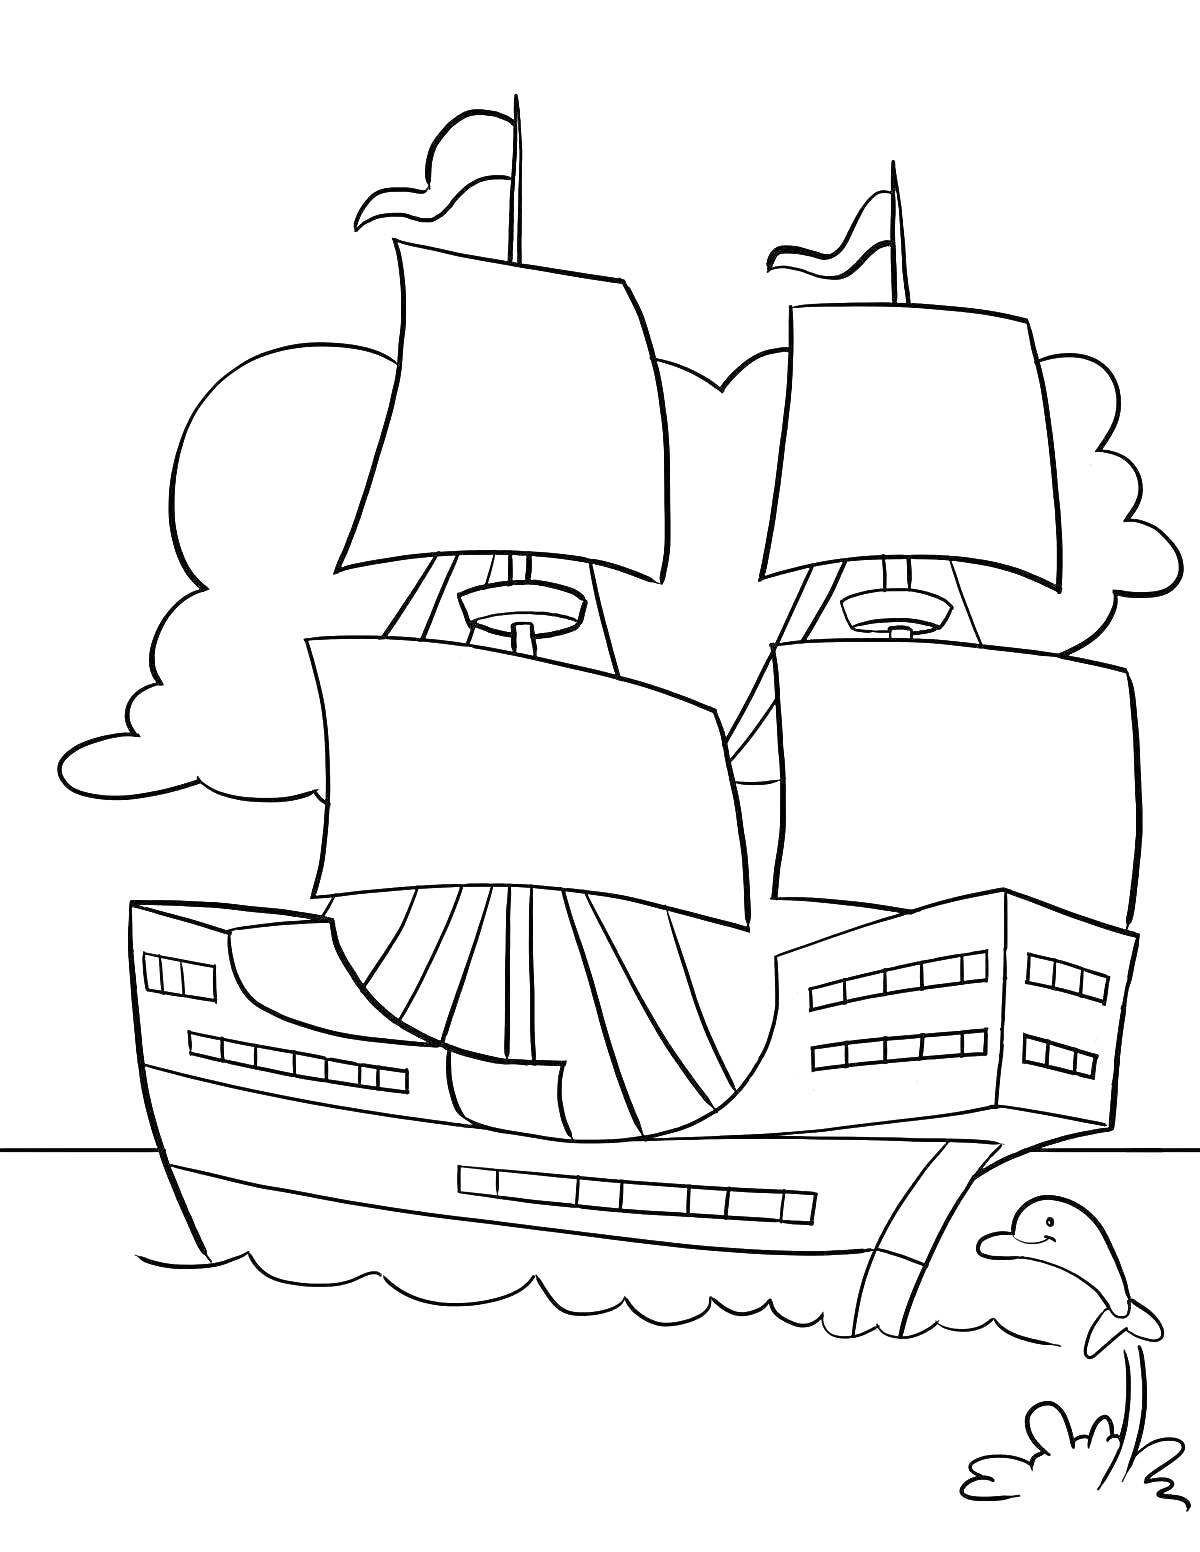 РаскраскаПарусный корабль с дельфином на фоне облаков